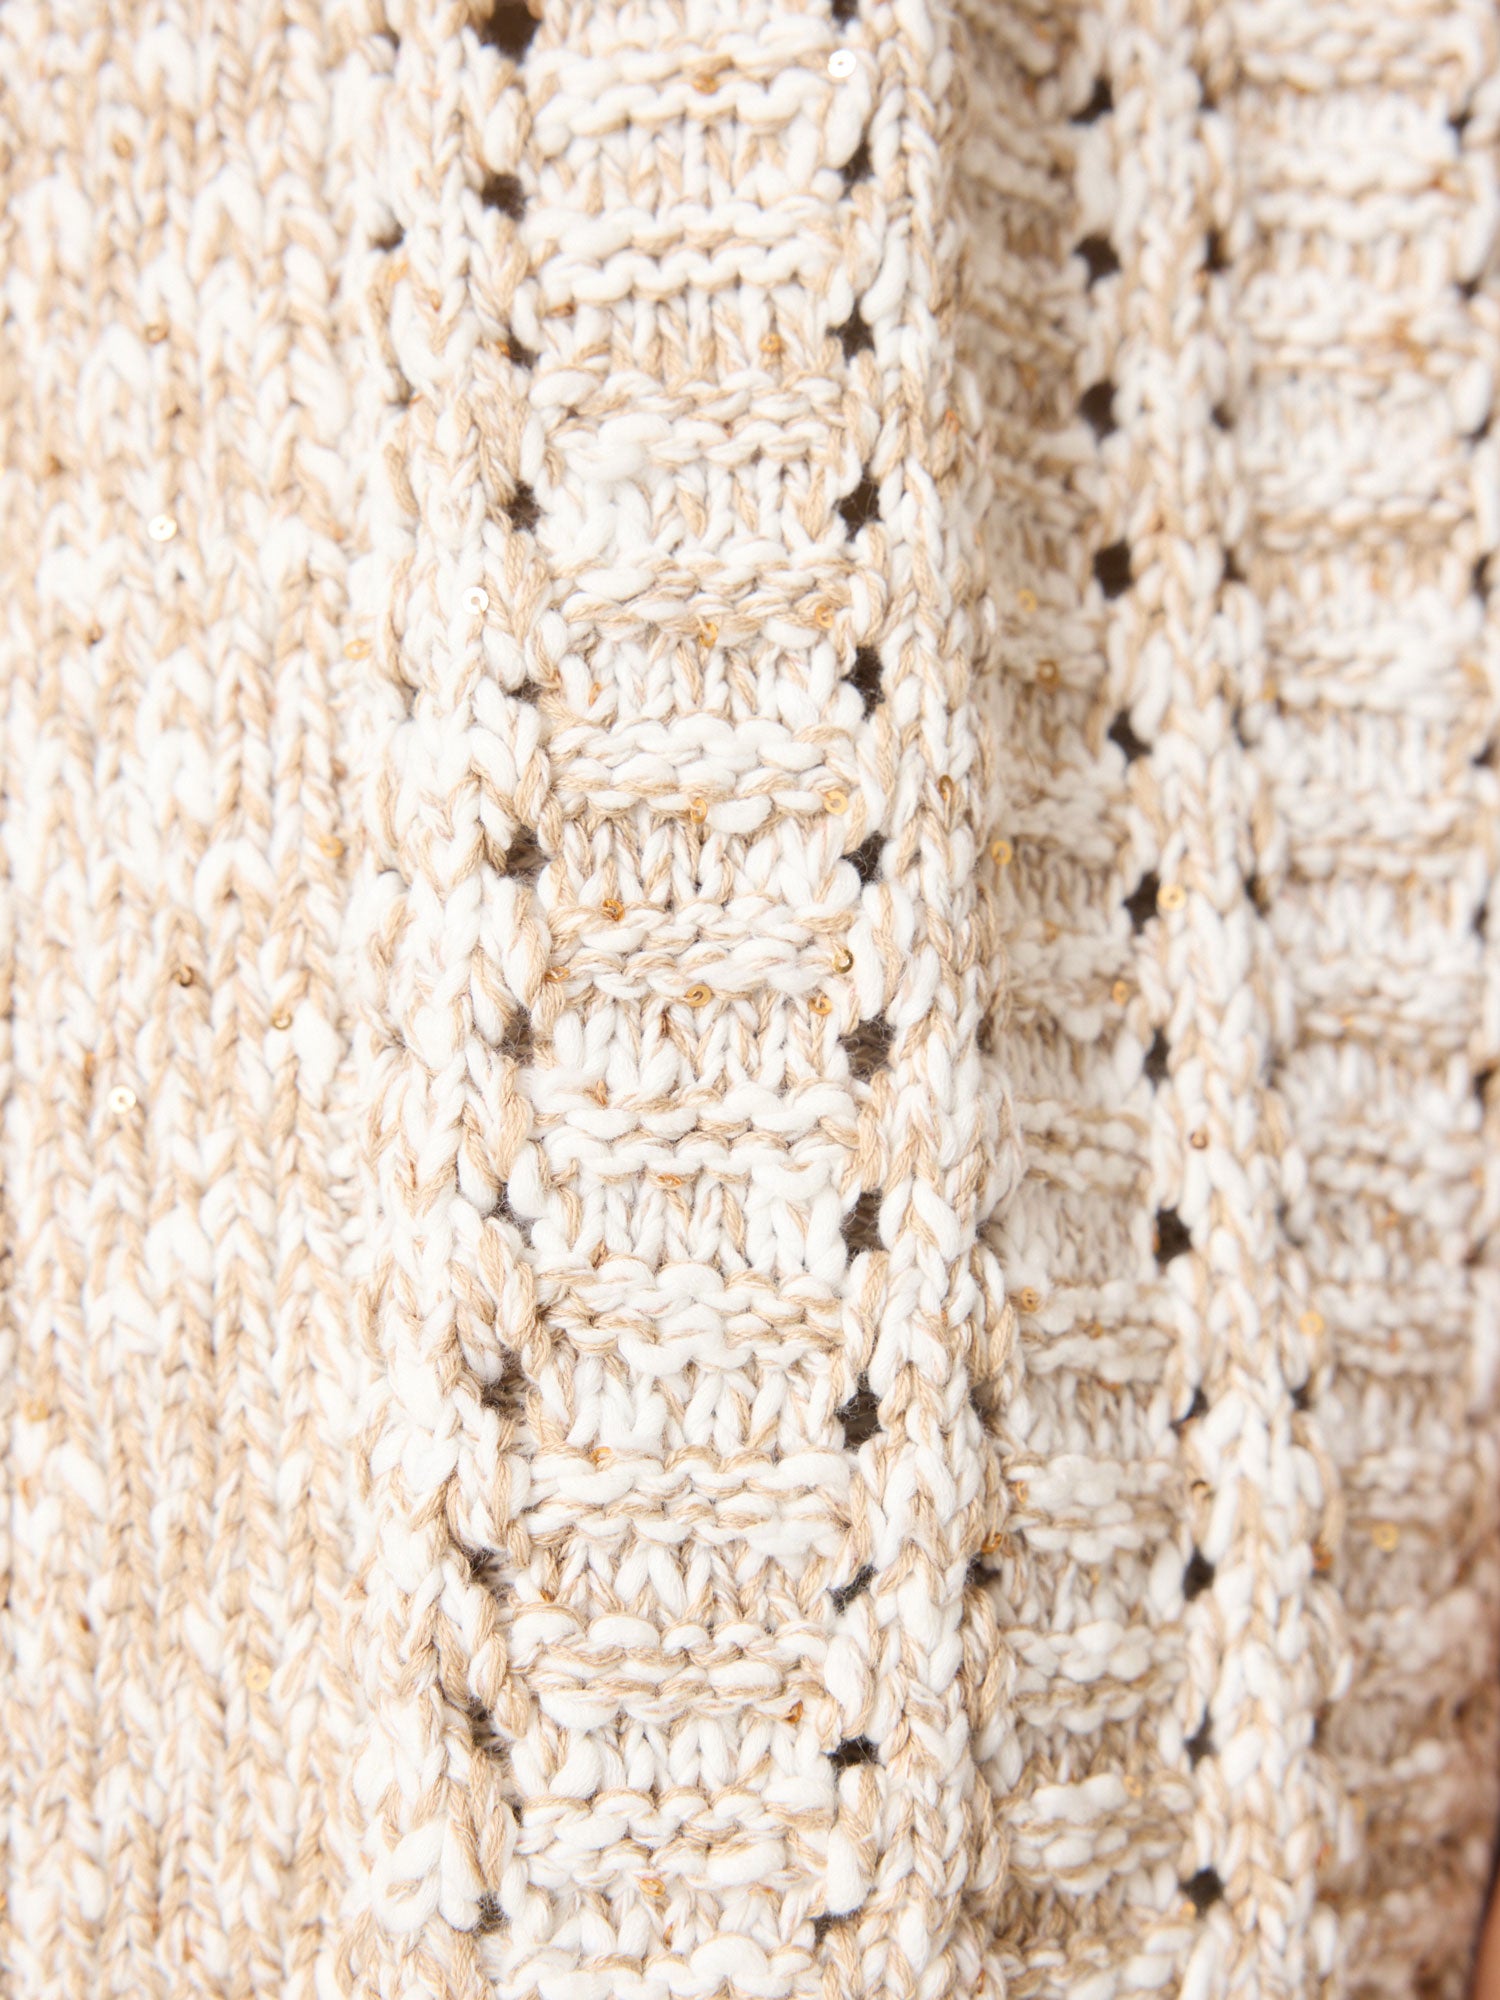 Malia short sleeves zip up beige hoodie sweater close up